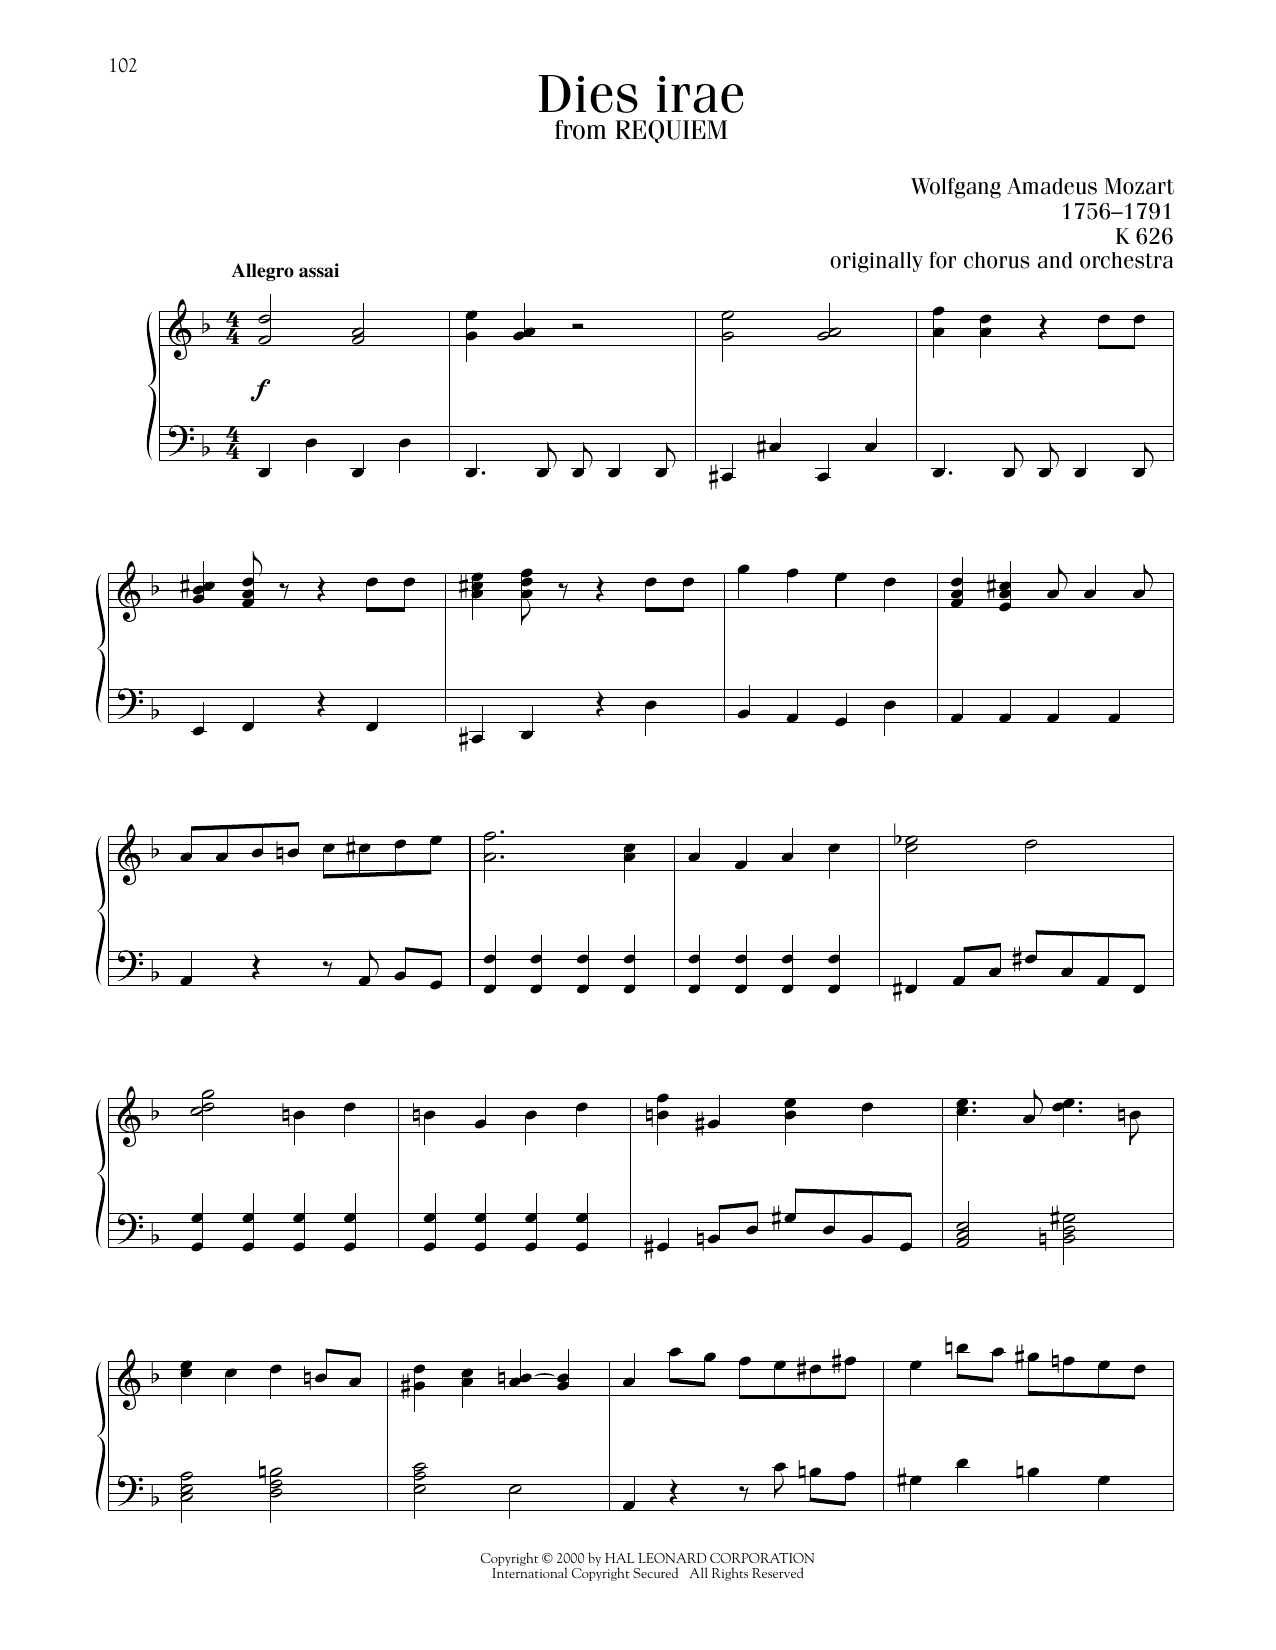 Wolfgang Amadeus Mozart Dies Irae sheet music notes printable PDF score